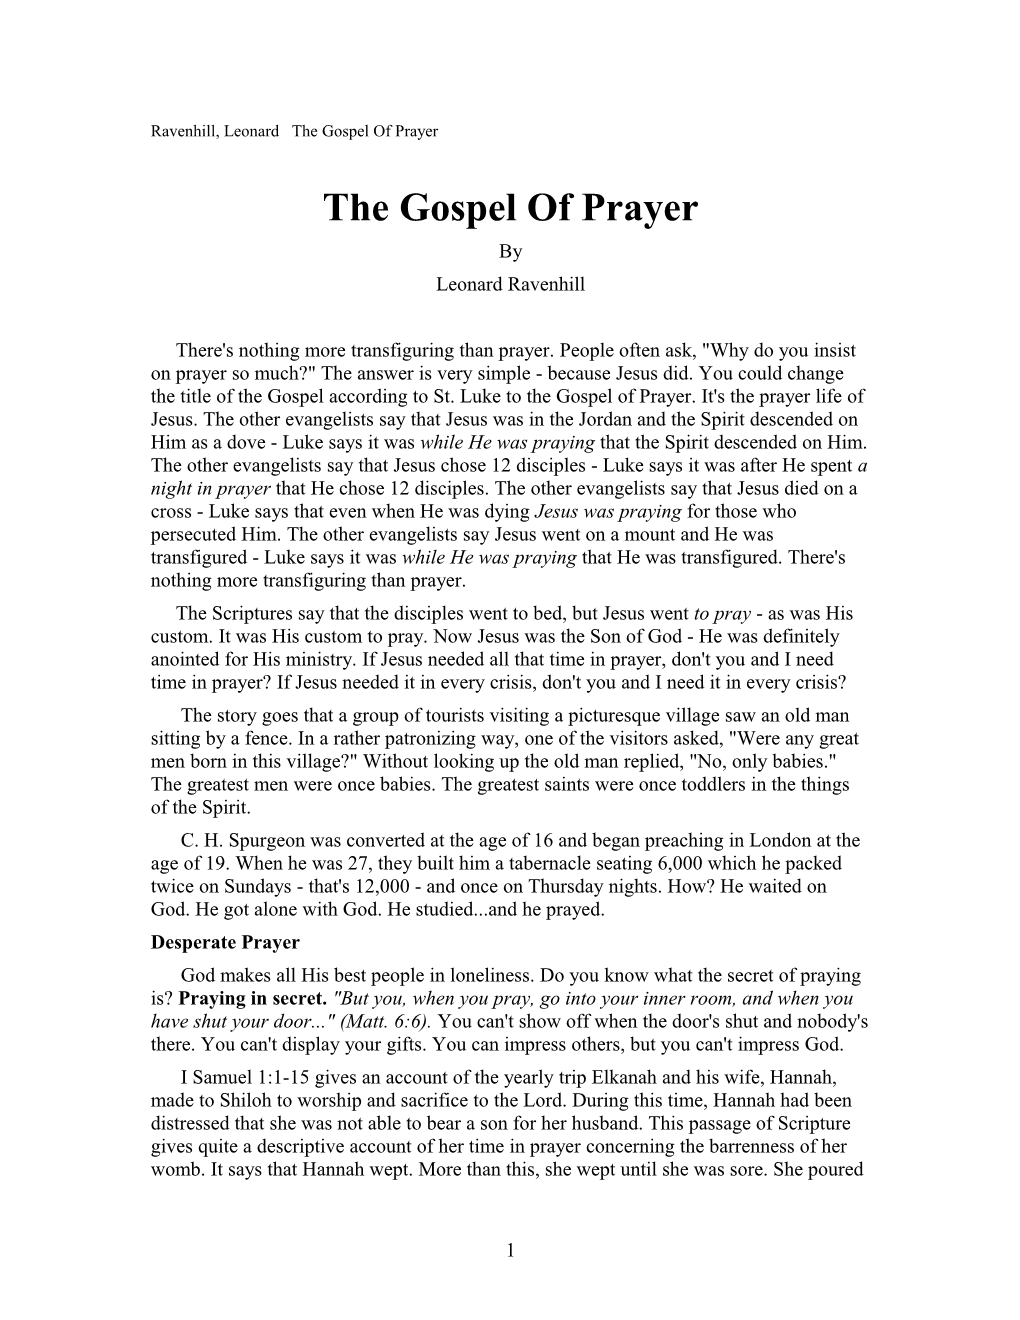 Ravenhill, Leonard the Gospel of Prayer